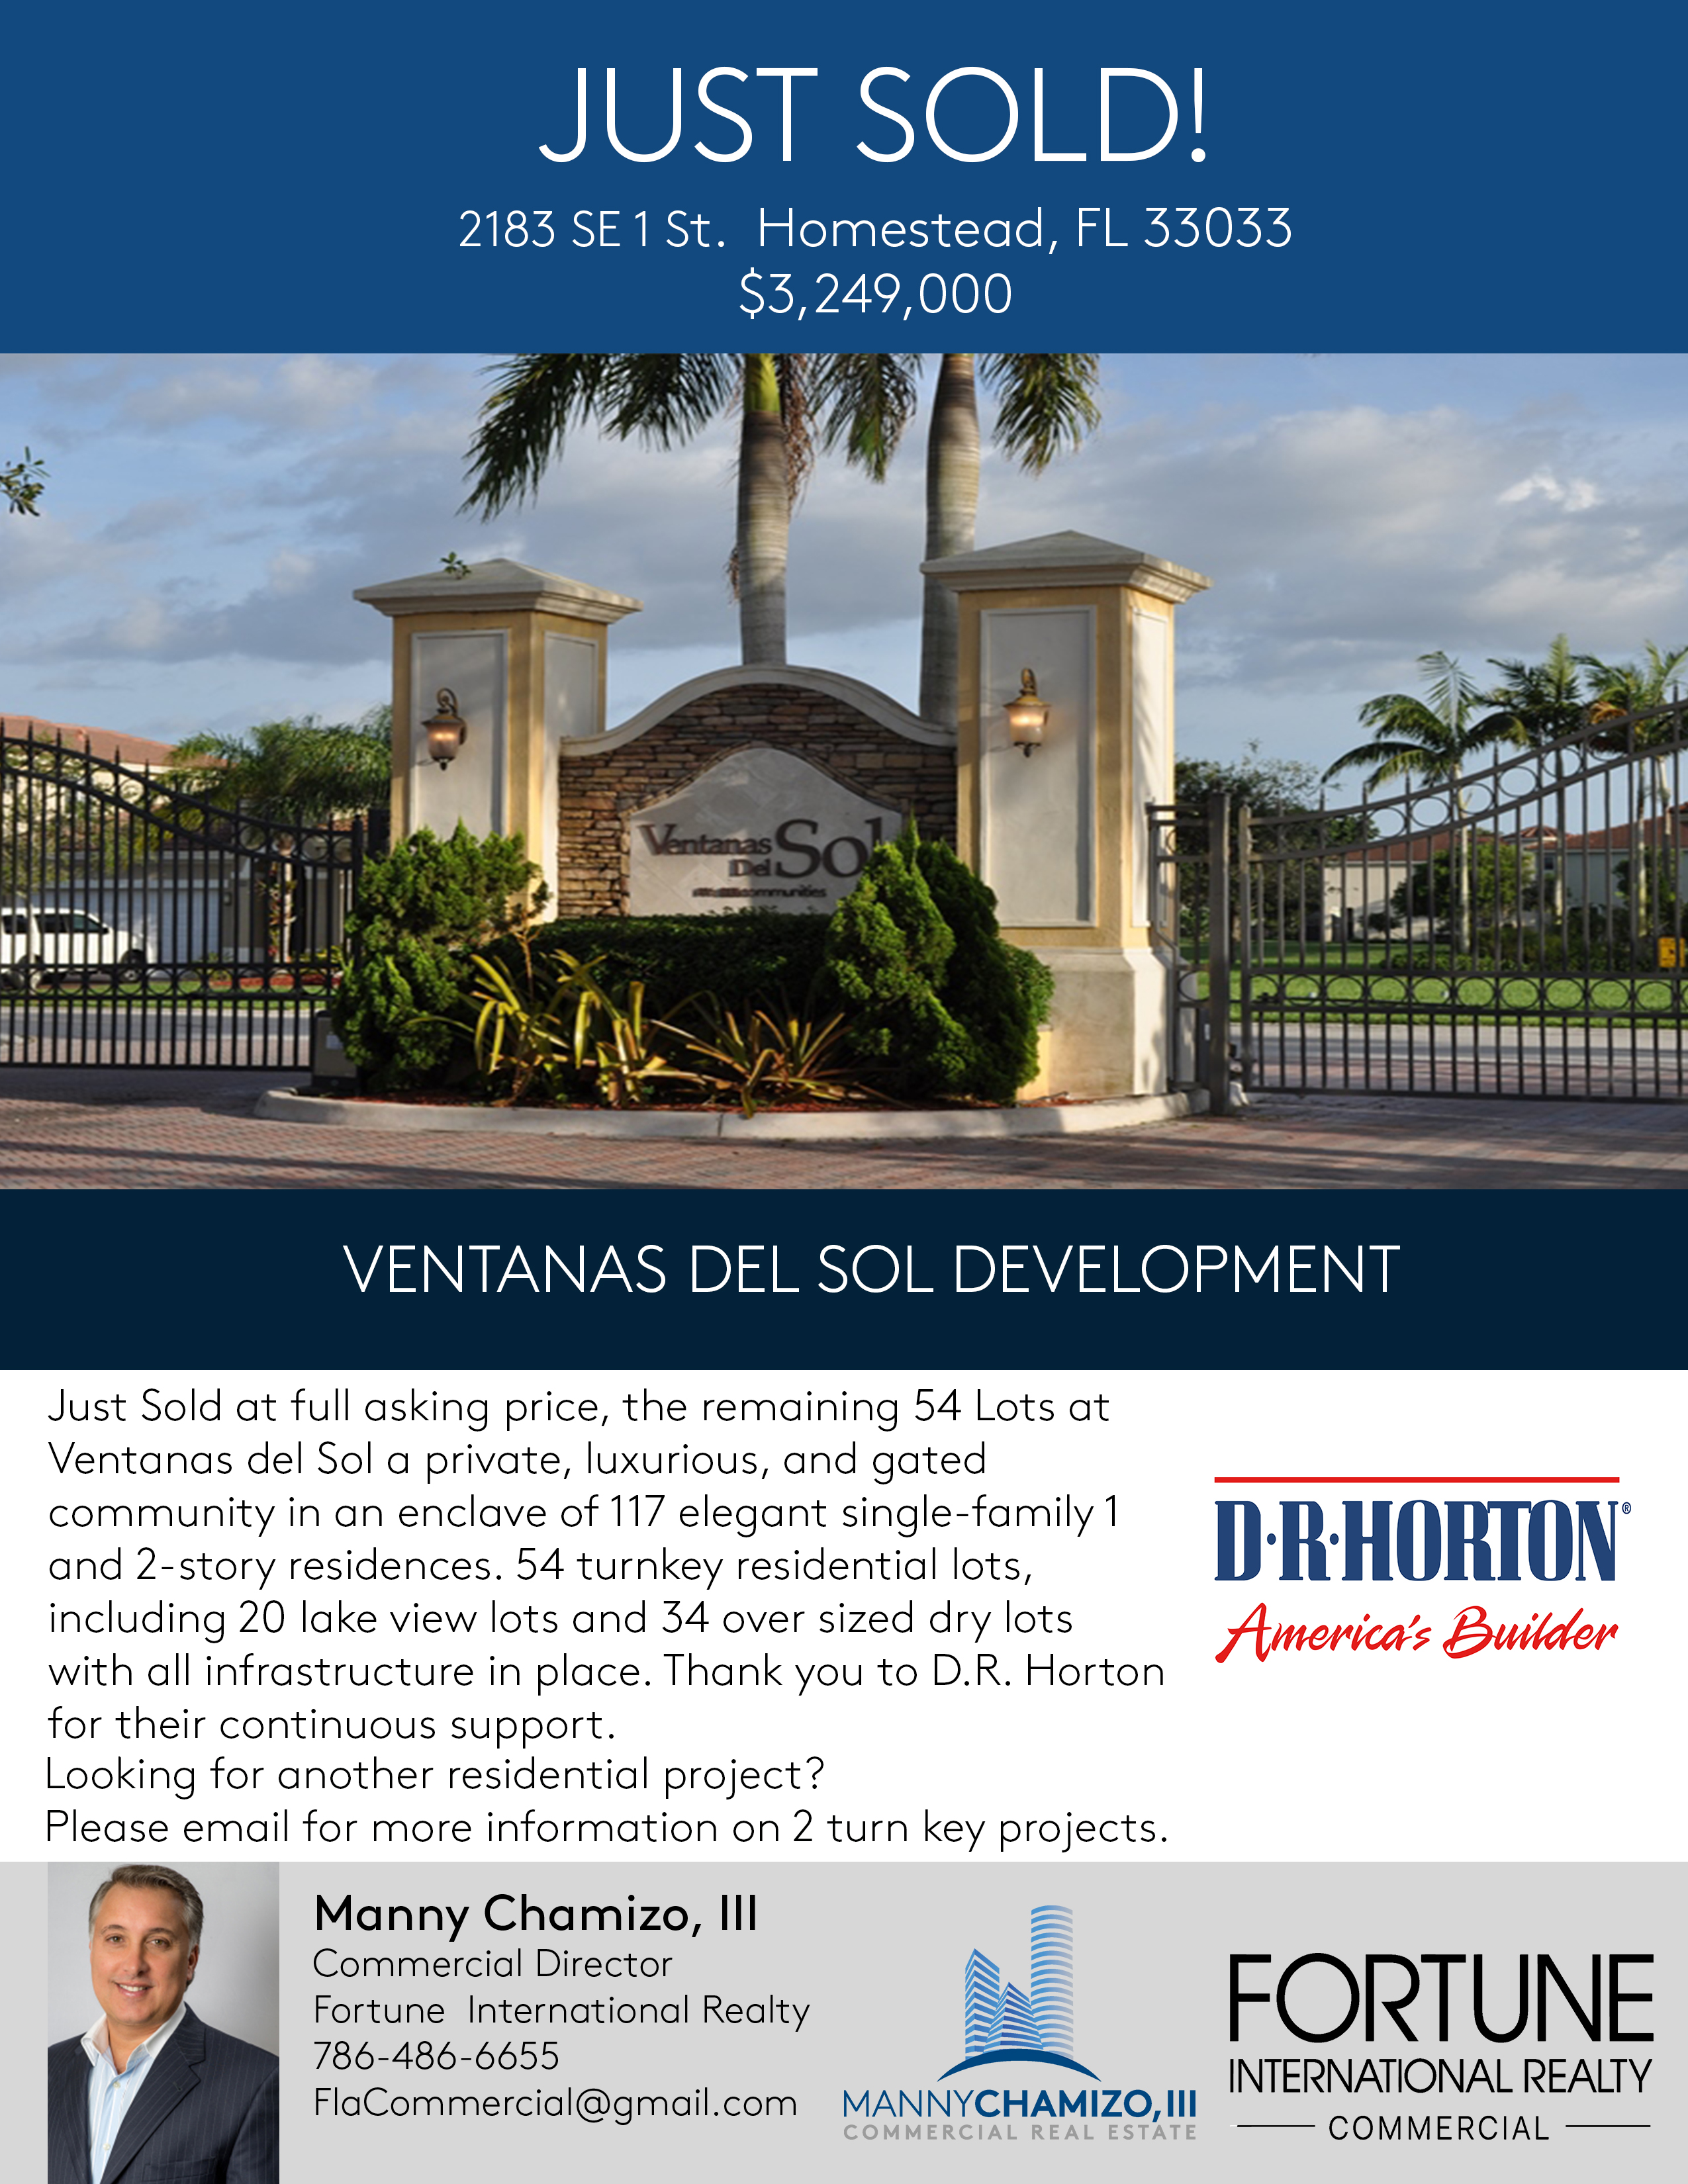 Just Sold! Ventanas del Sol Development